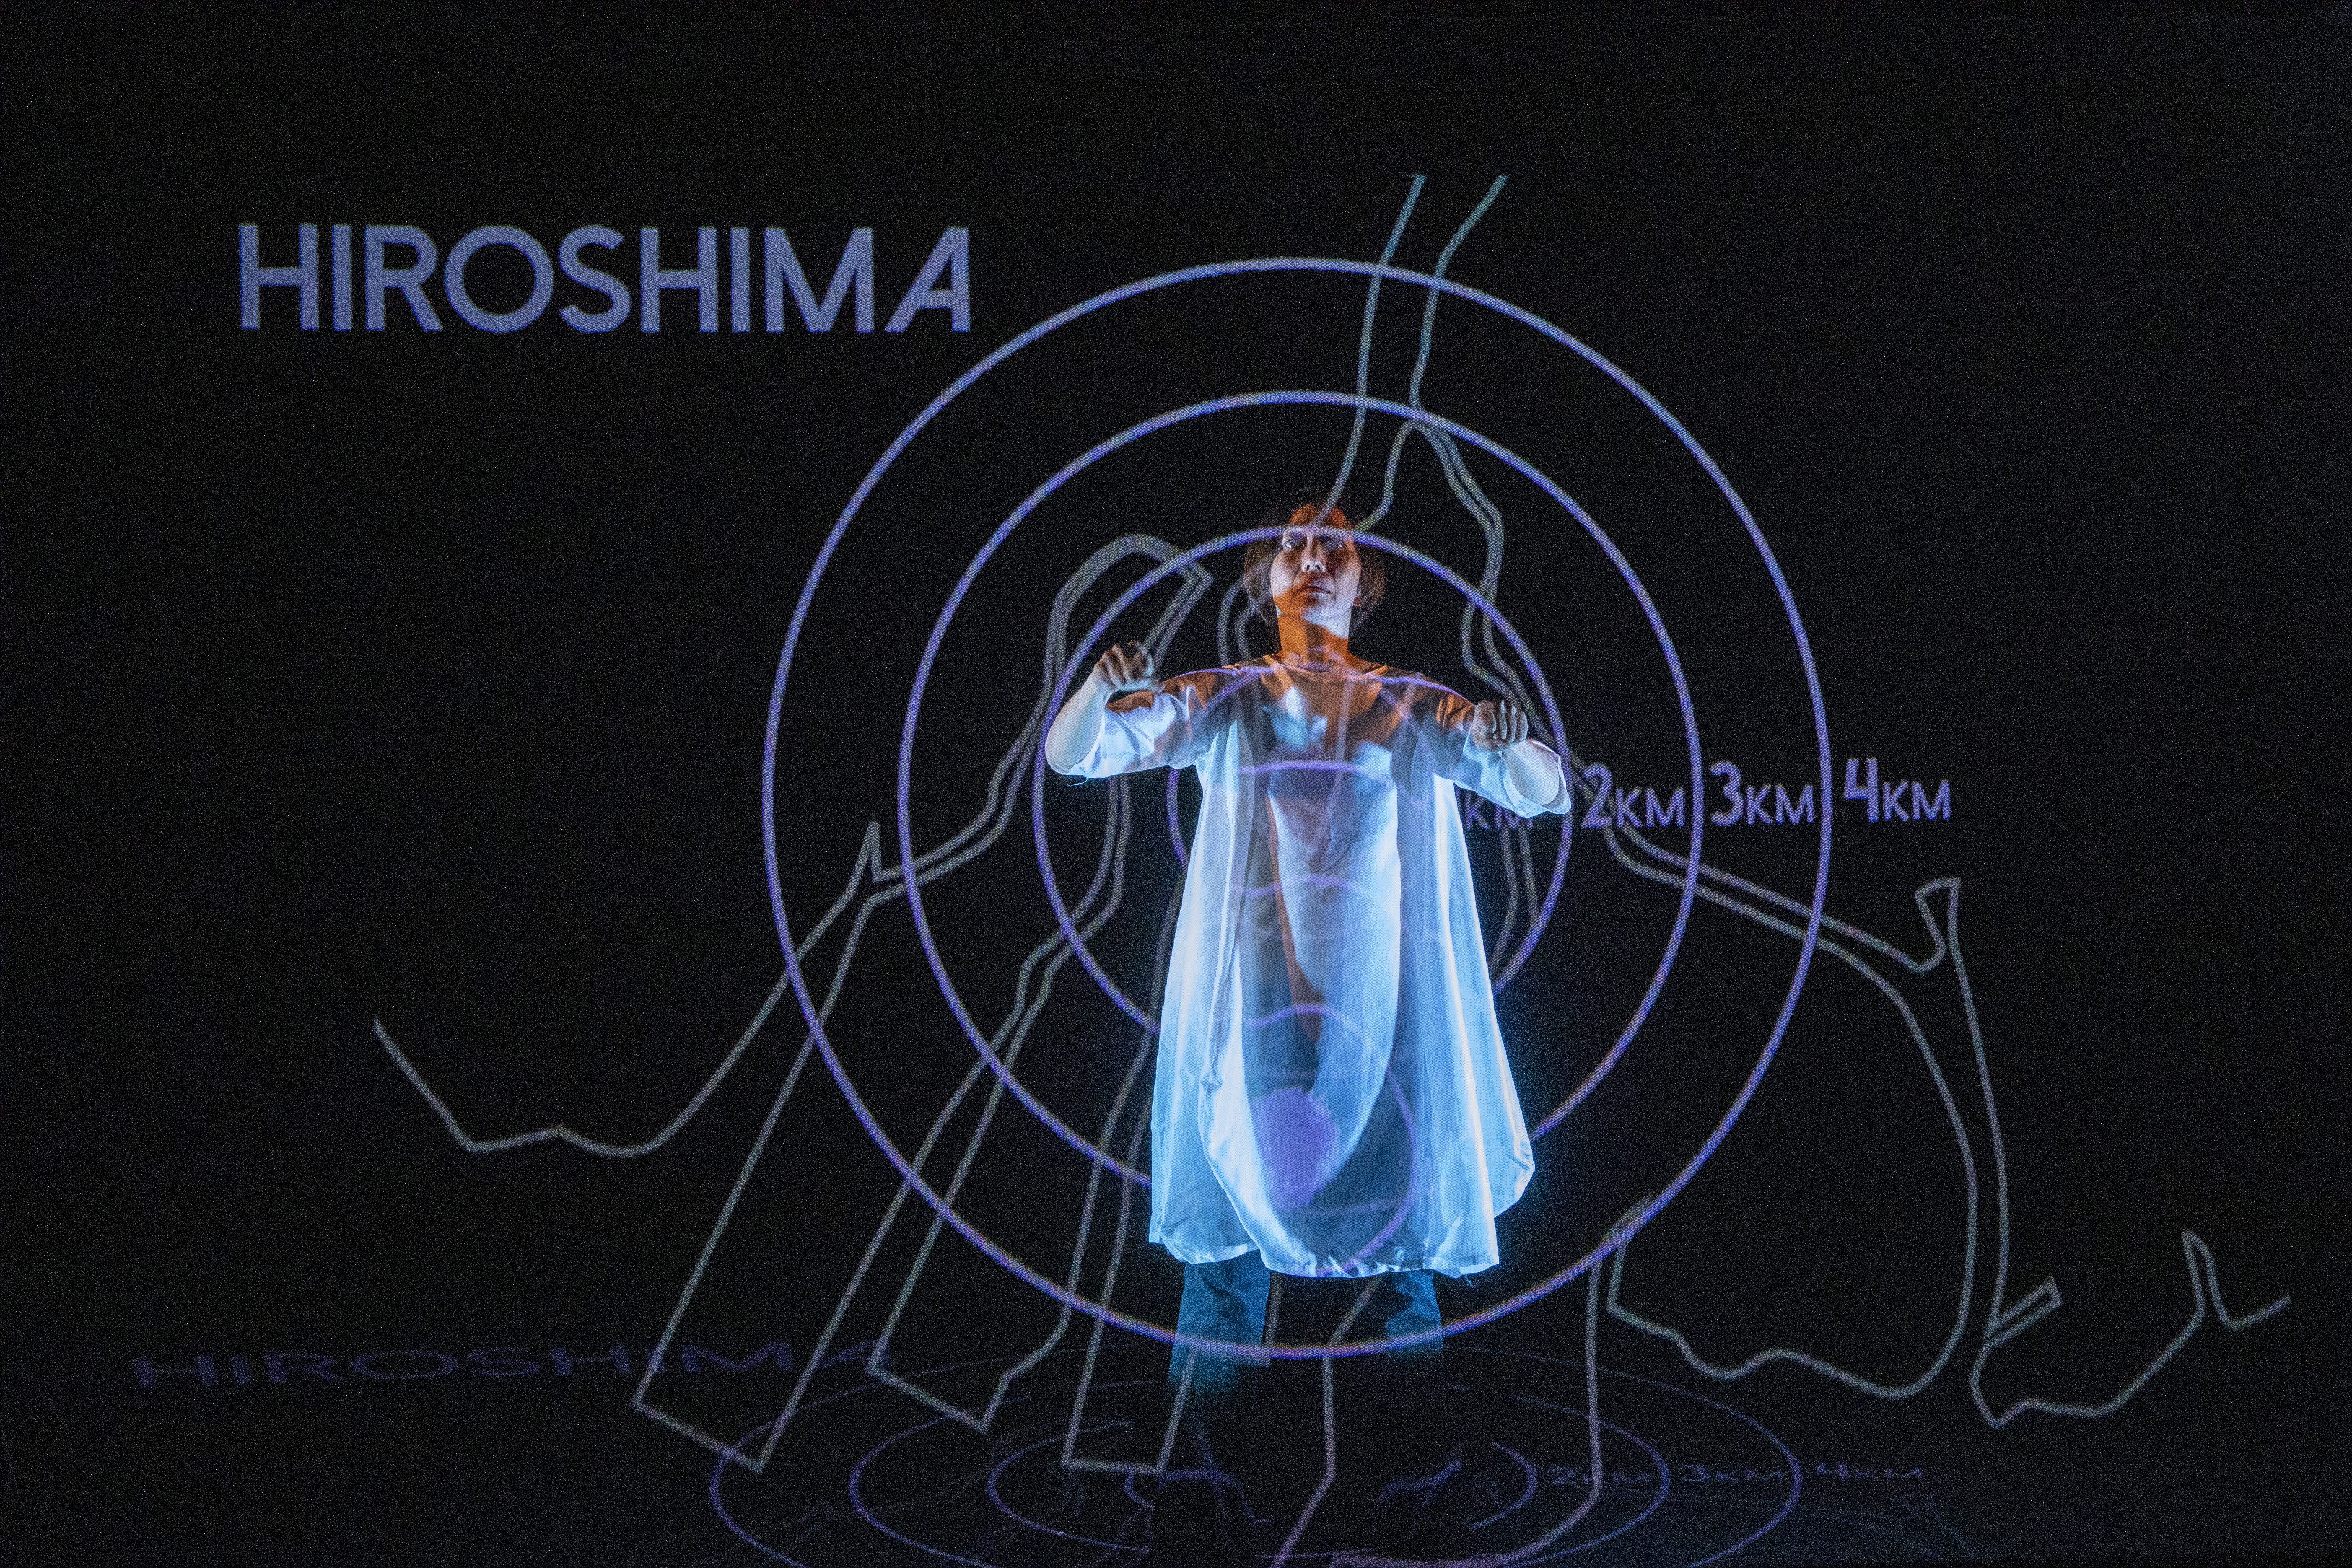 Man sieht eine Person in weissem Kleid, die Armbewegungen macht. Zusätzlich sieht man eine Projektion mit verschiedenen Linien und dem Wort 'Hiroshima'